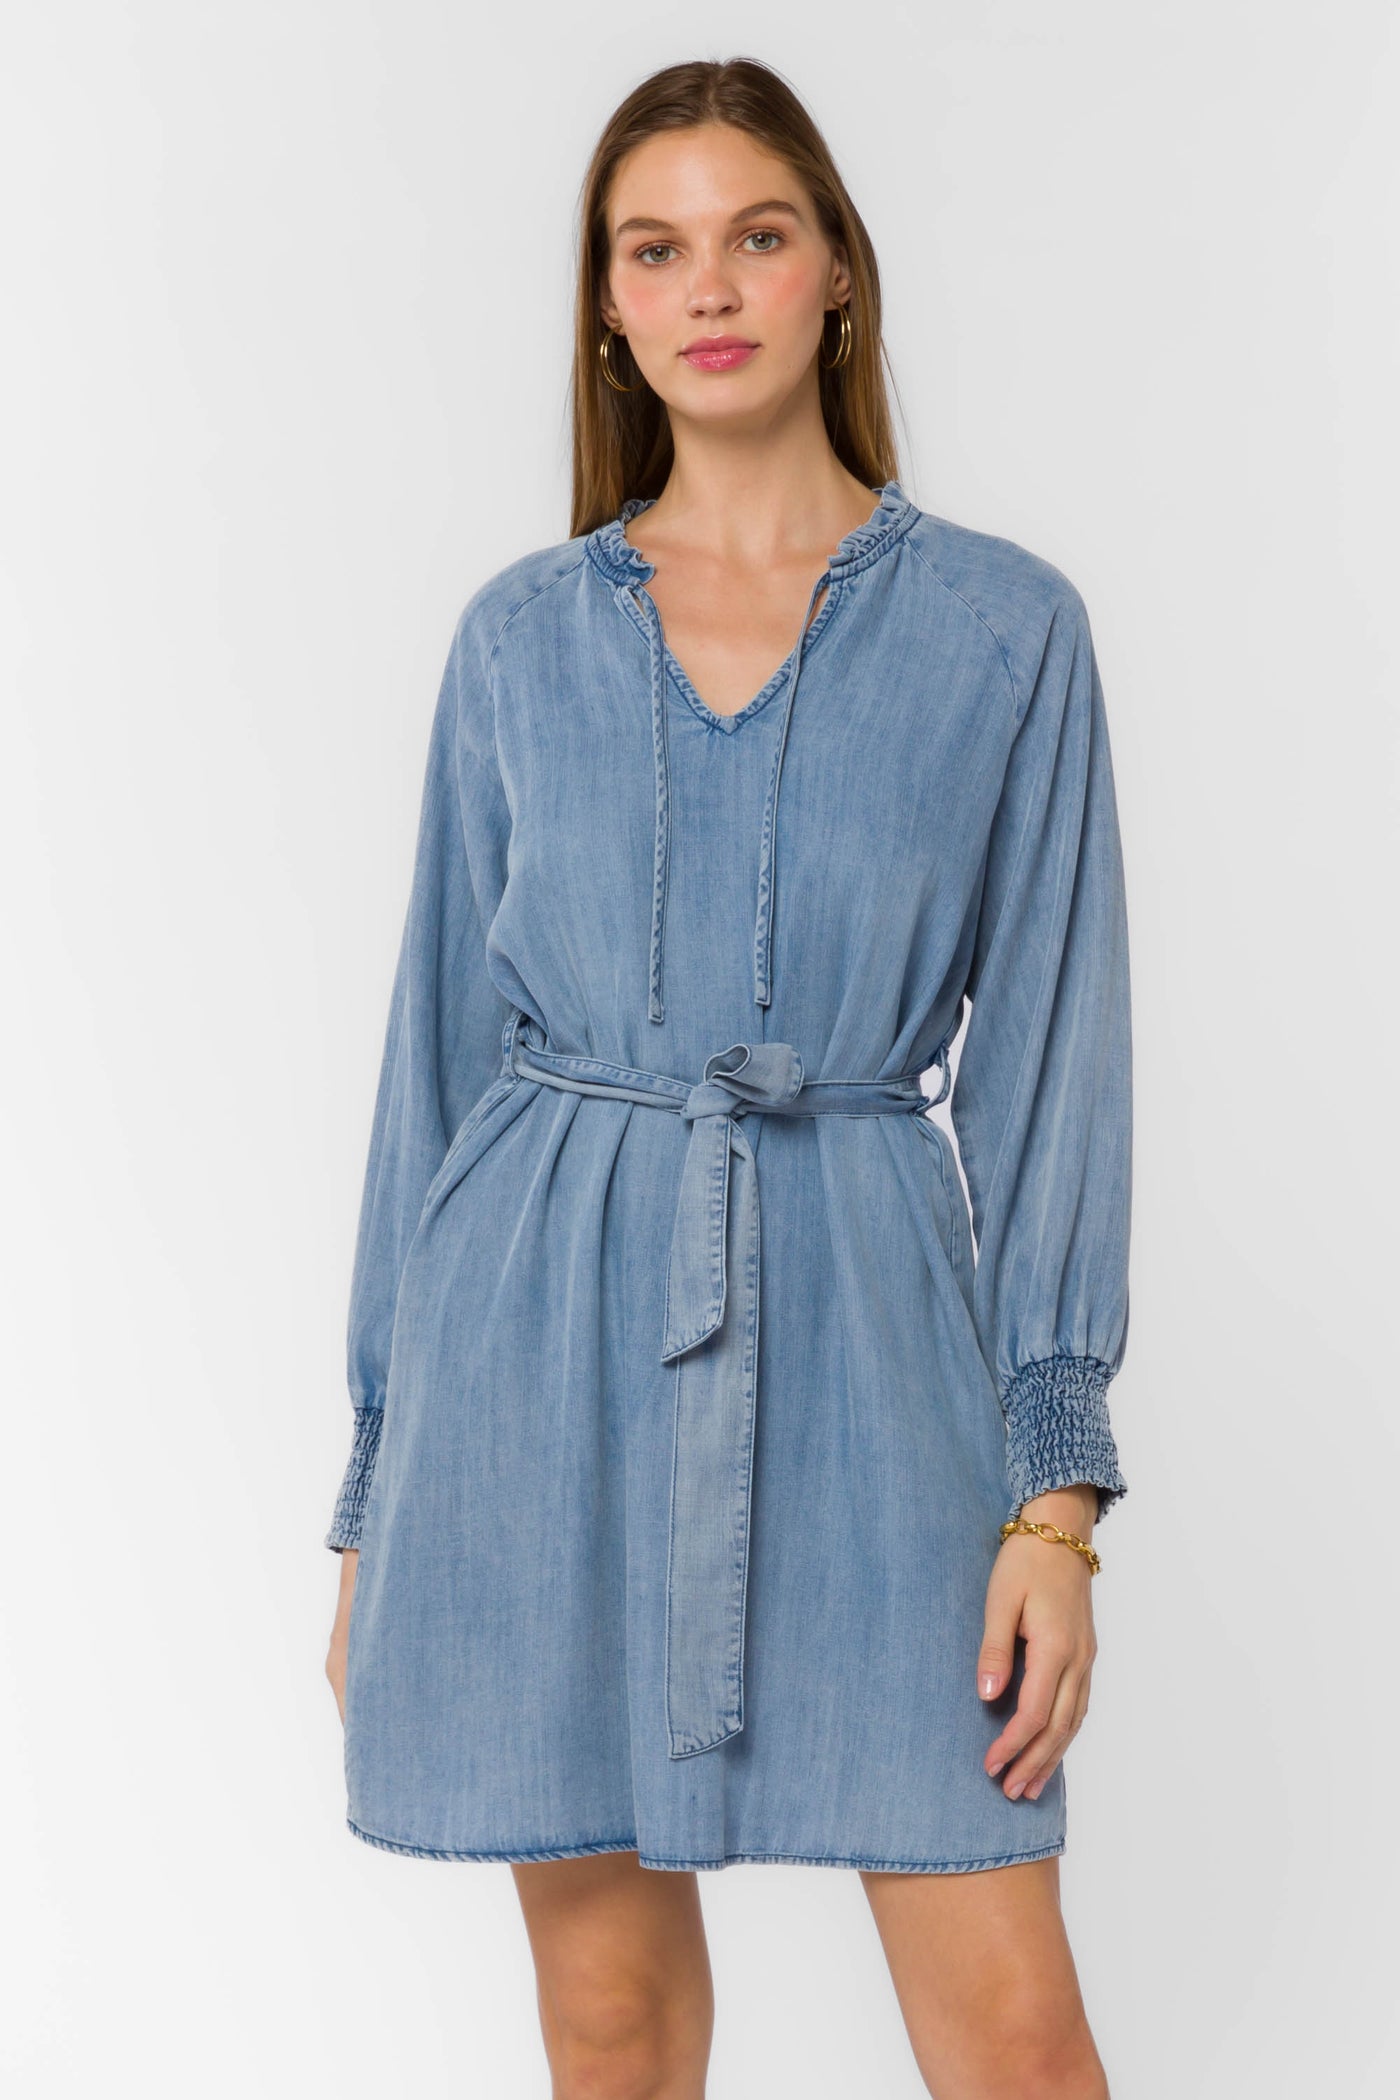 Roslyn Blue Dress - Dresses - Velvet Heart Clothing